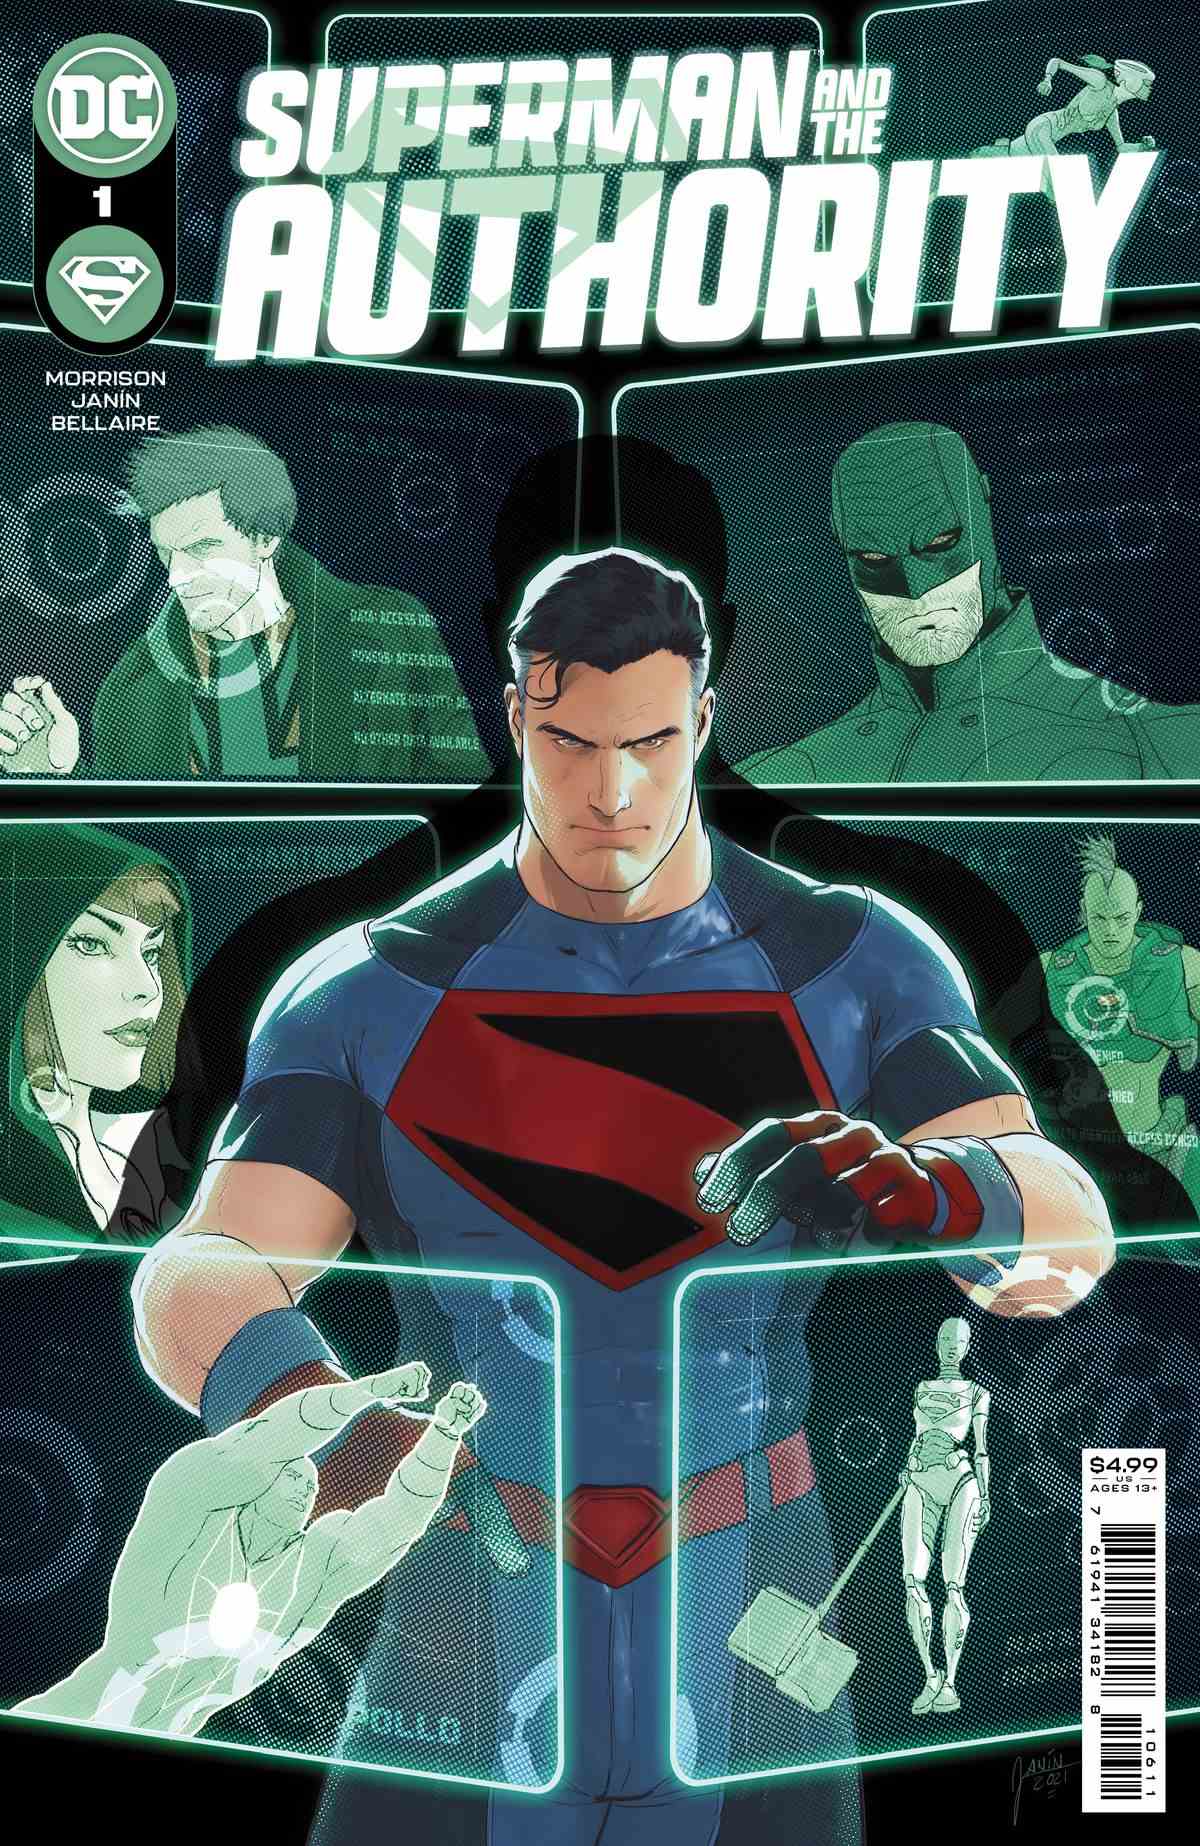 Superman inspecte les images holographiques de divers membres de l'Autorité sur la couverture de Superman and the Authority # 1, DC Comics (2021).